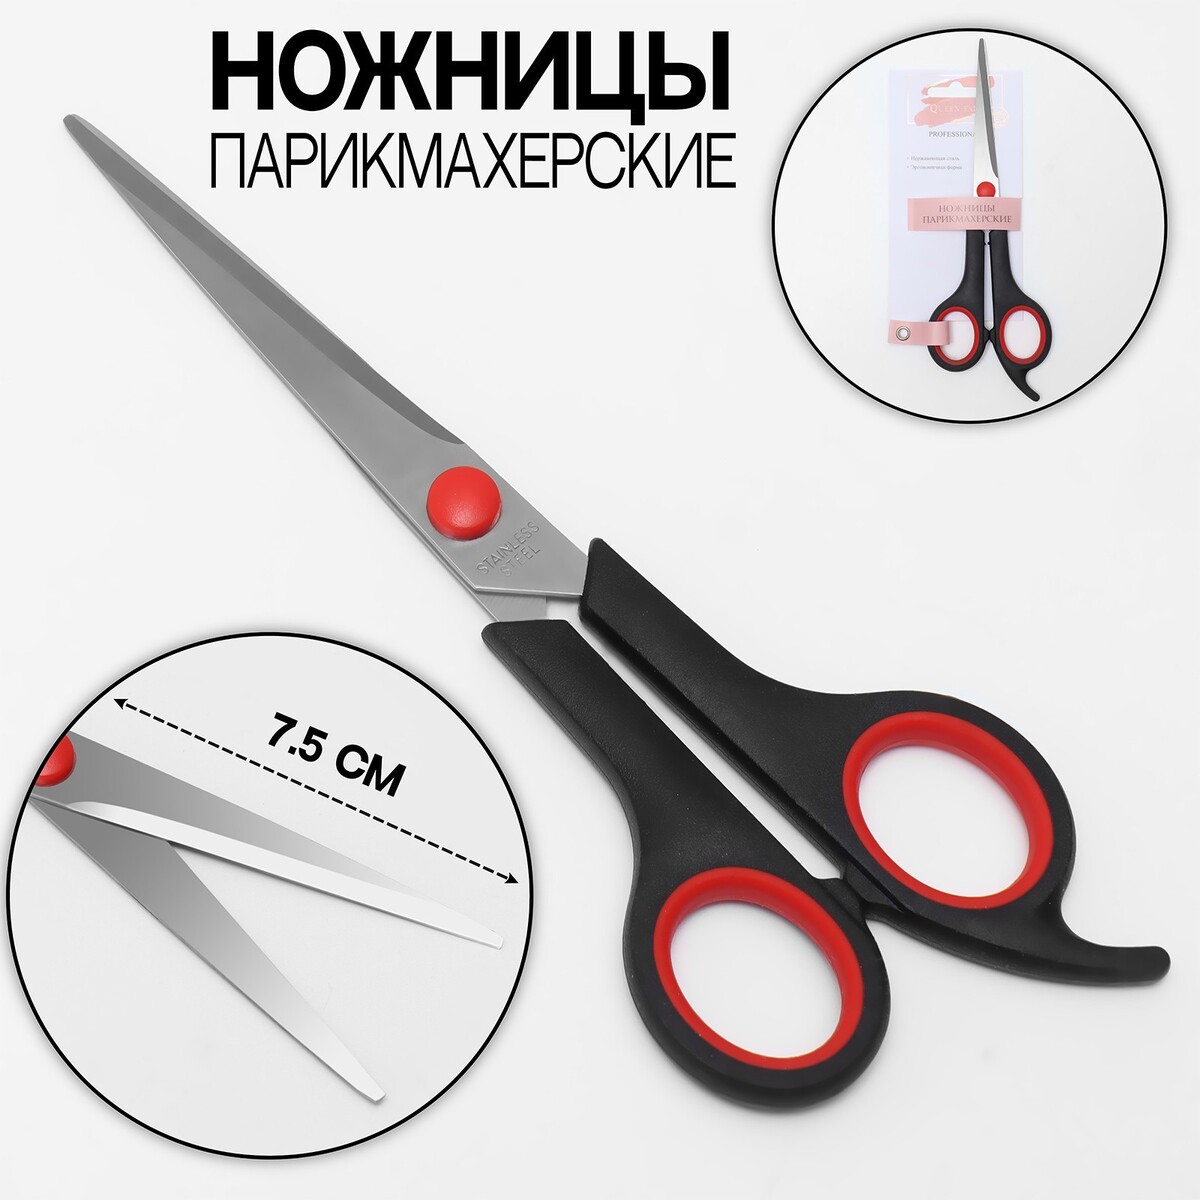 Ножницы парикмахерские с упором, лезвие — 7,5 см, цвет черный/красный ножницы филировочные с упором лезвие 6 см